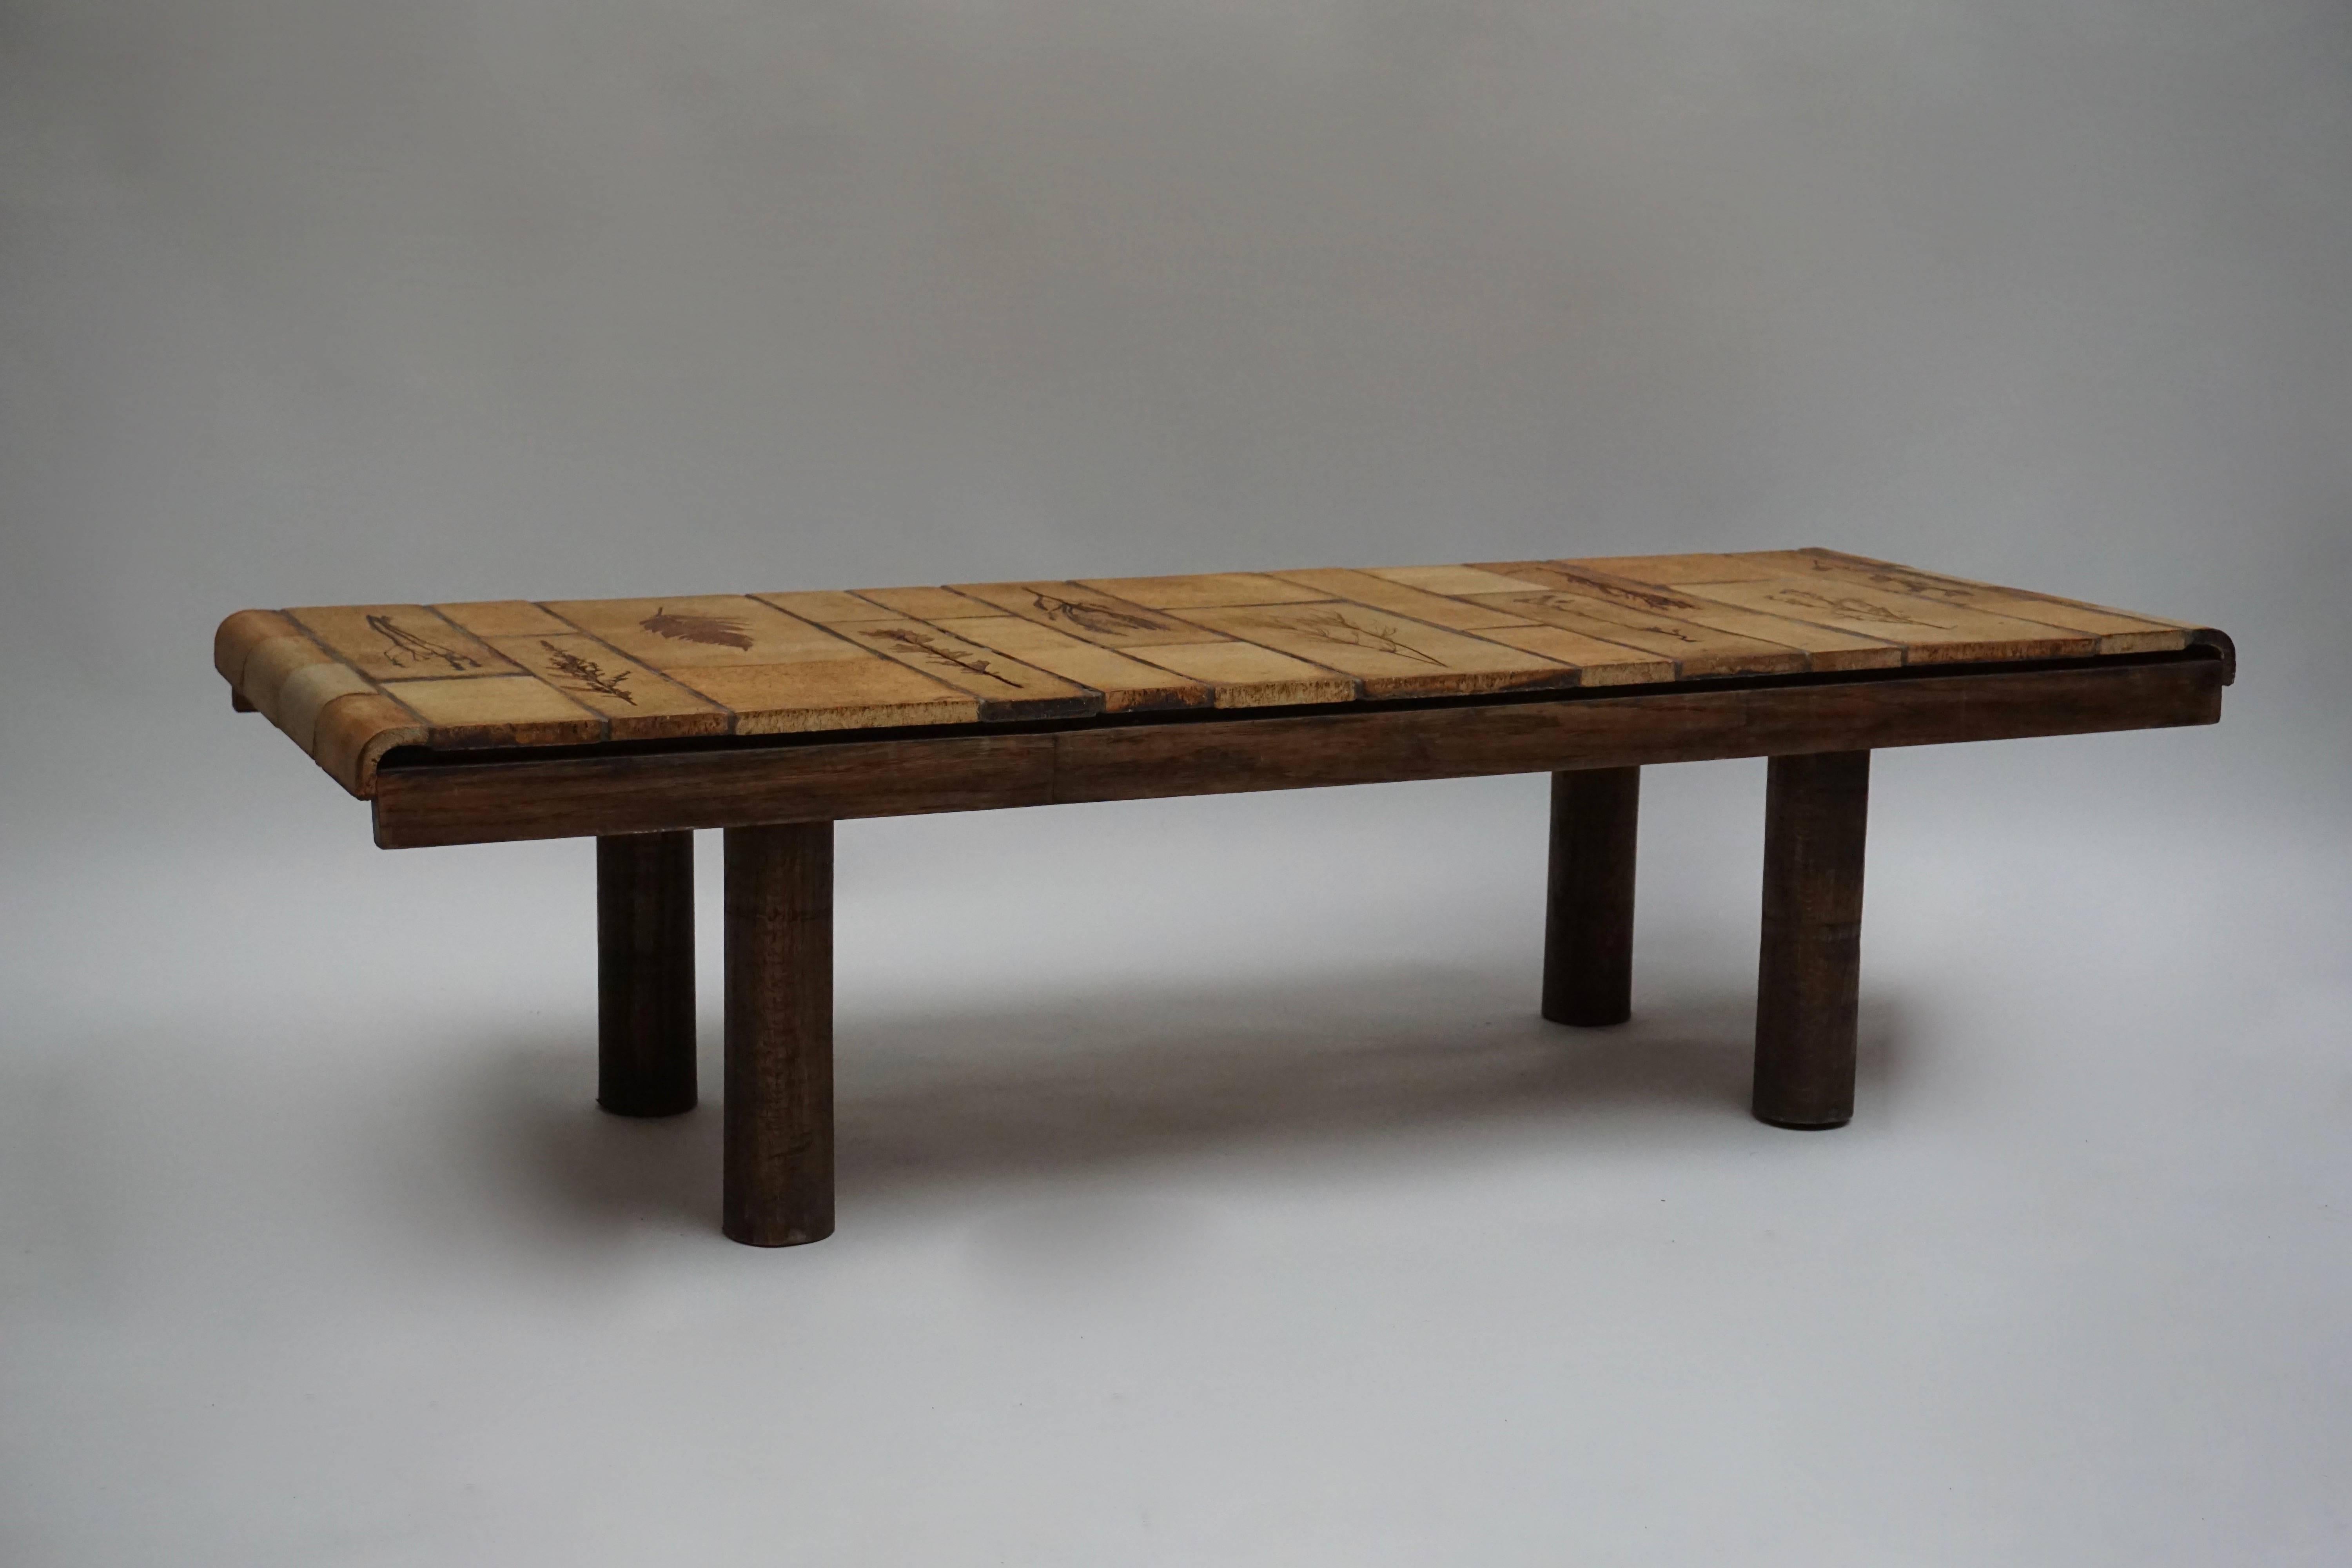 Une table architecturale en bois et céramique de Roger Capron, France.
Mesures : Hauteur 38 cm.
Largeur 142 cm.
Profondeur 54 cm.
Poids 44 kg.